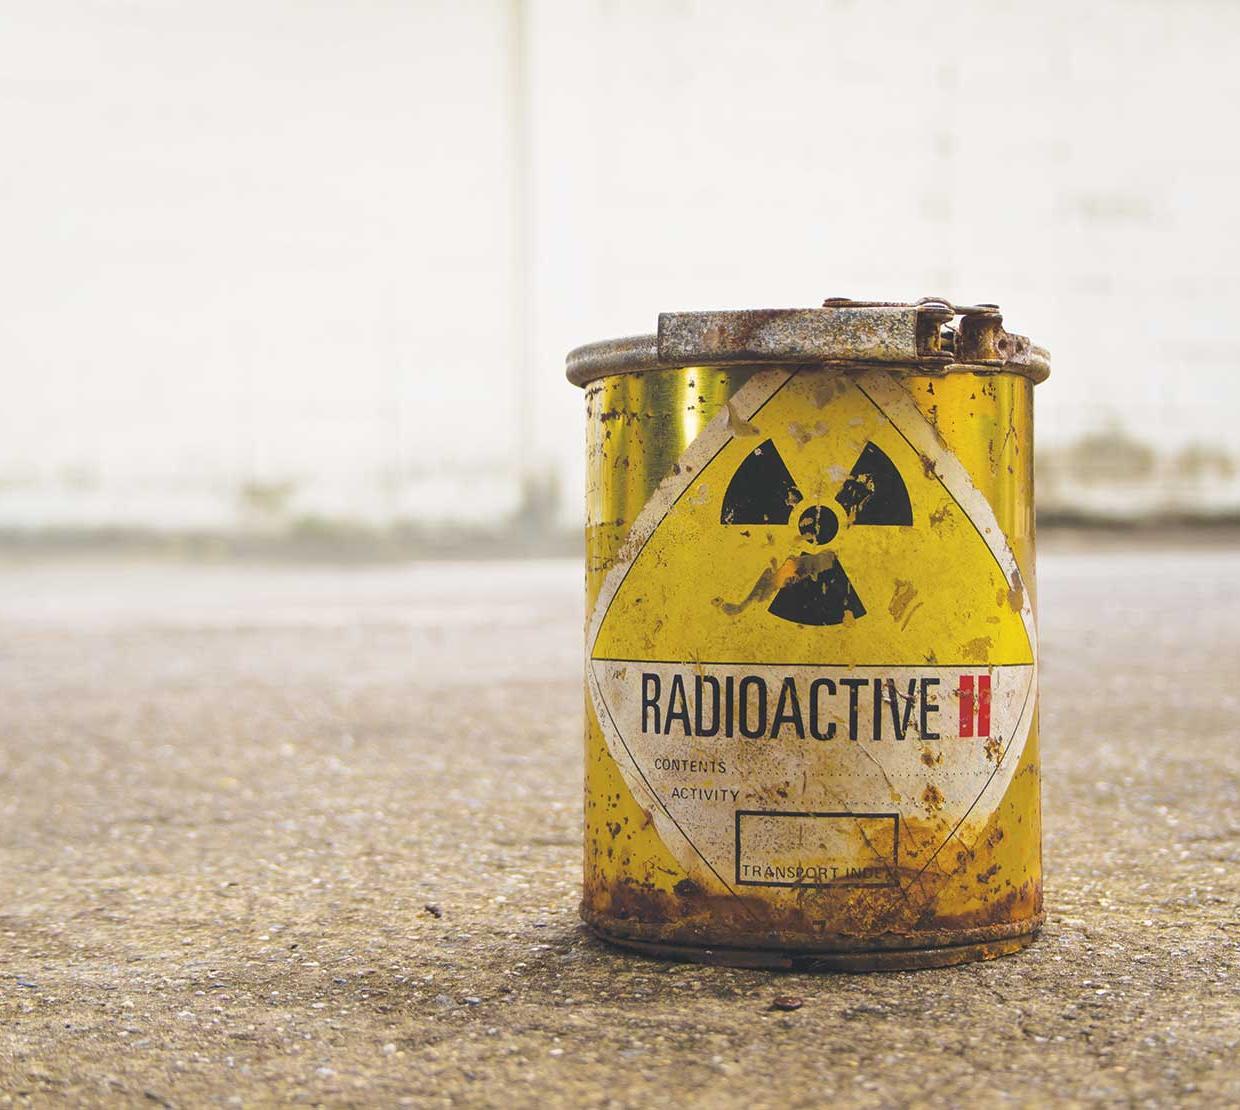 Radioactive waste bucket in concrete backdrop